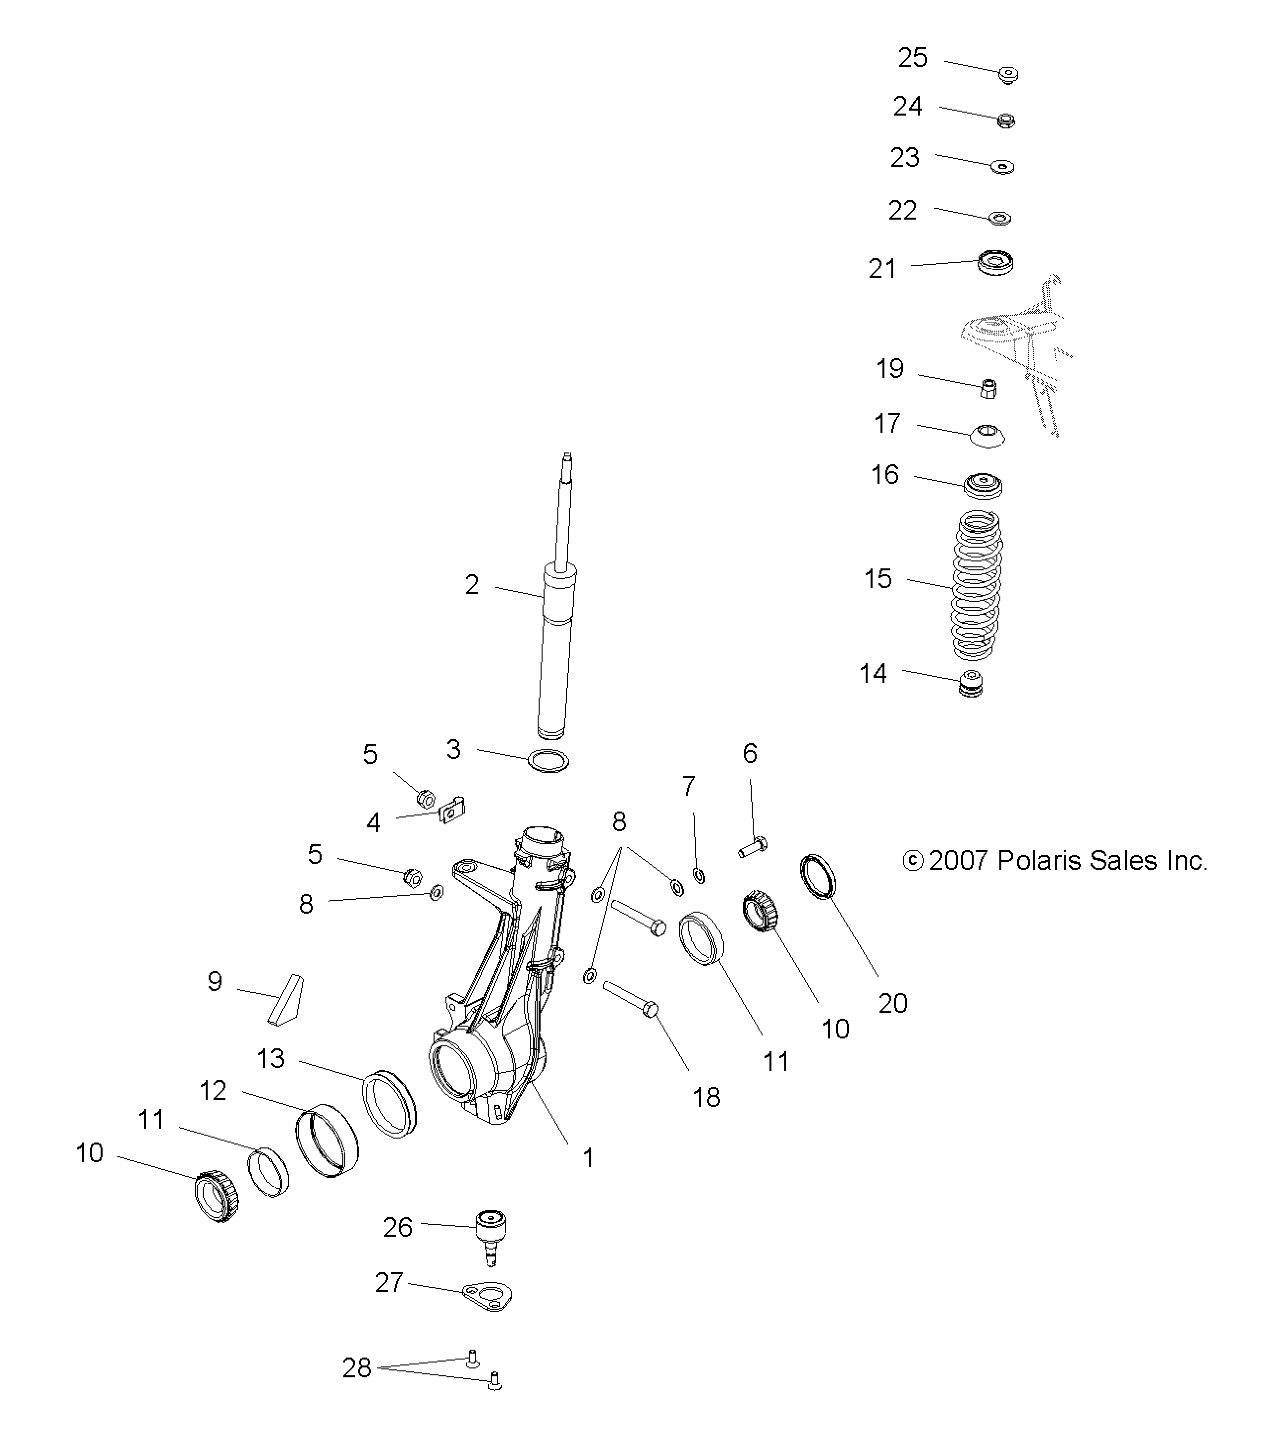 Foto diagrama Polaris que contem a peça 5222193